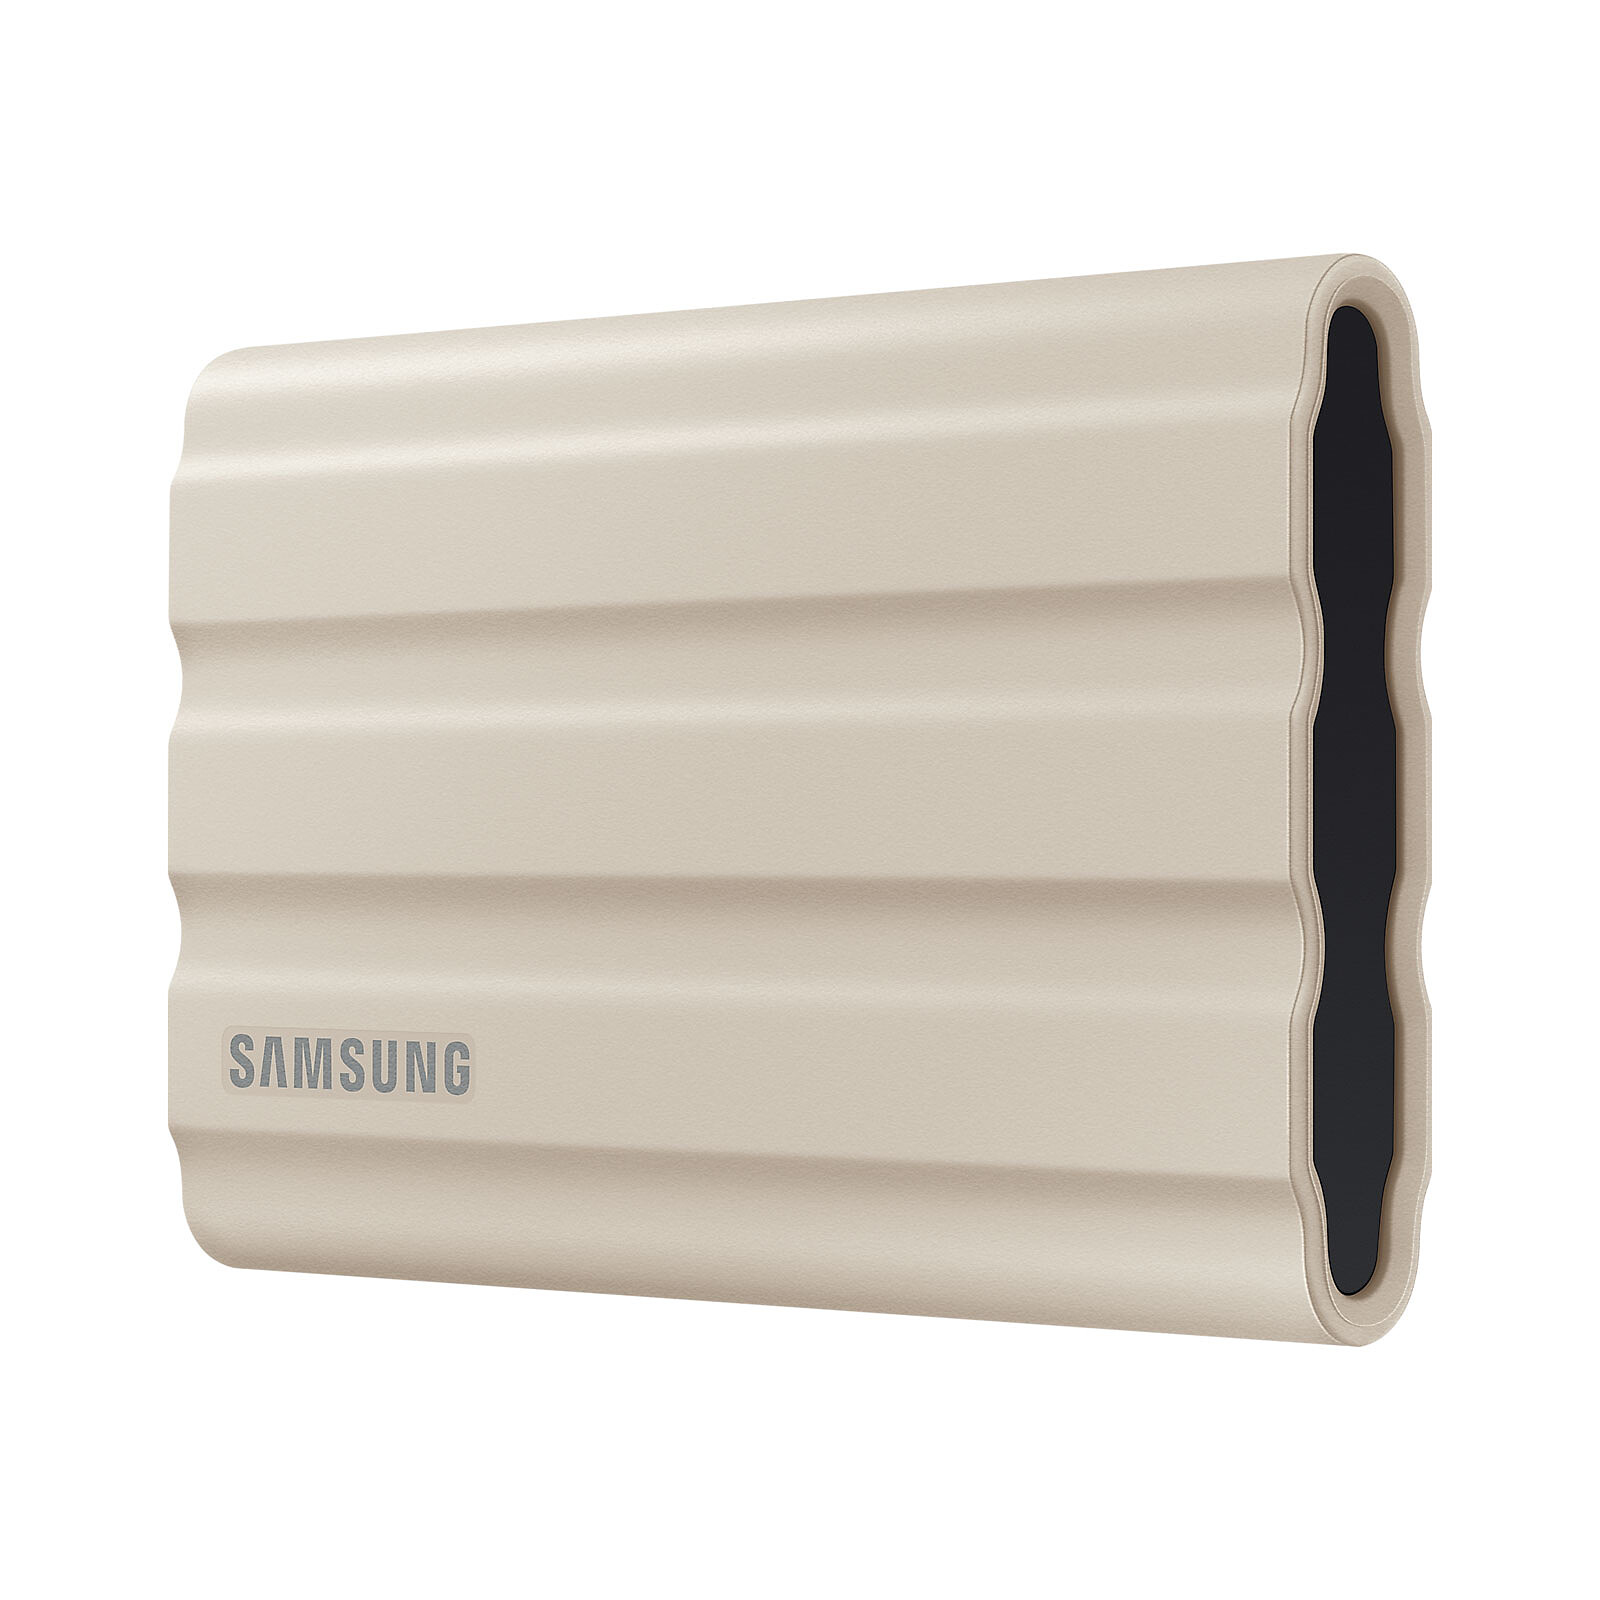 Samsung External SSD T7 Shield 2 TB Beige - External hard drive